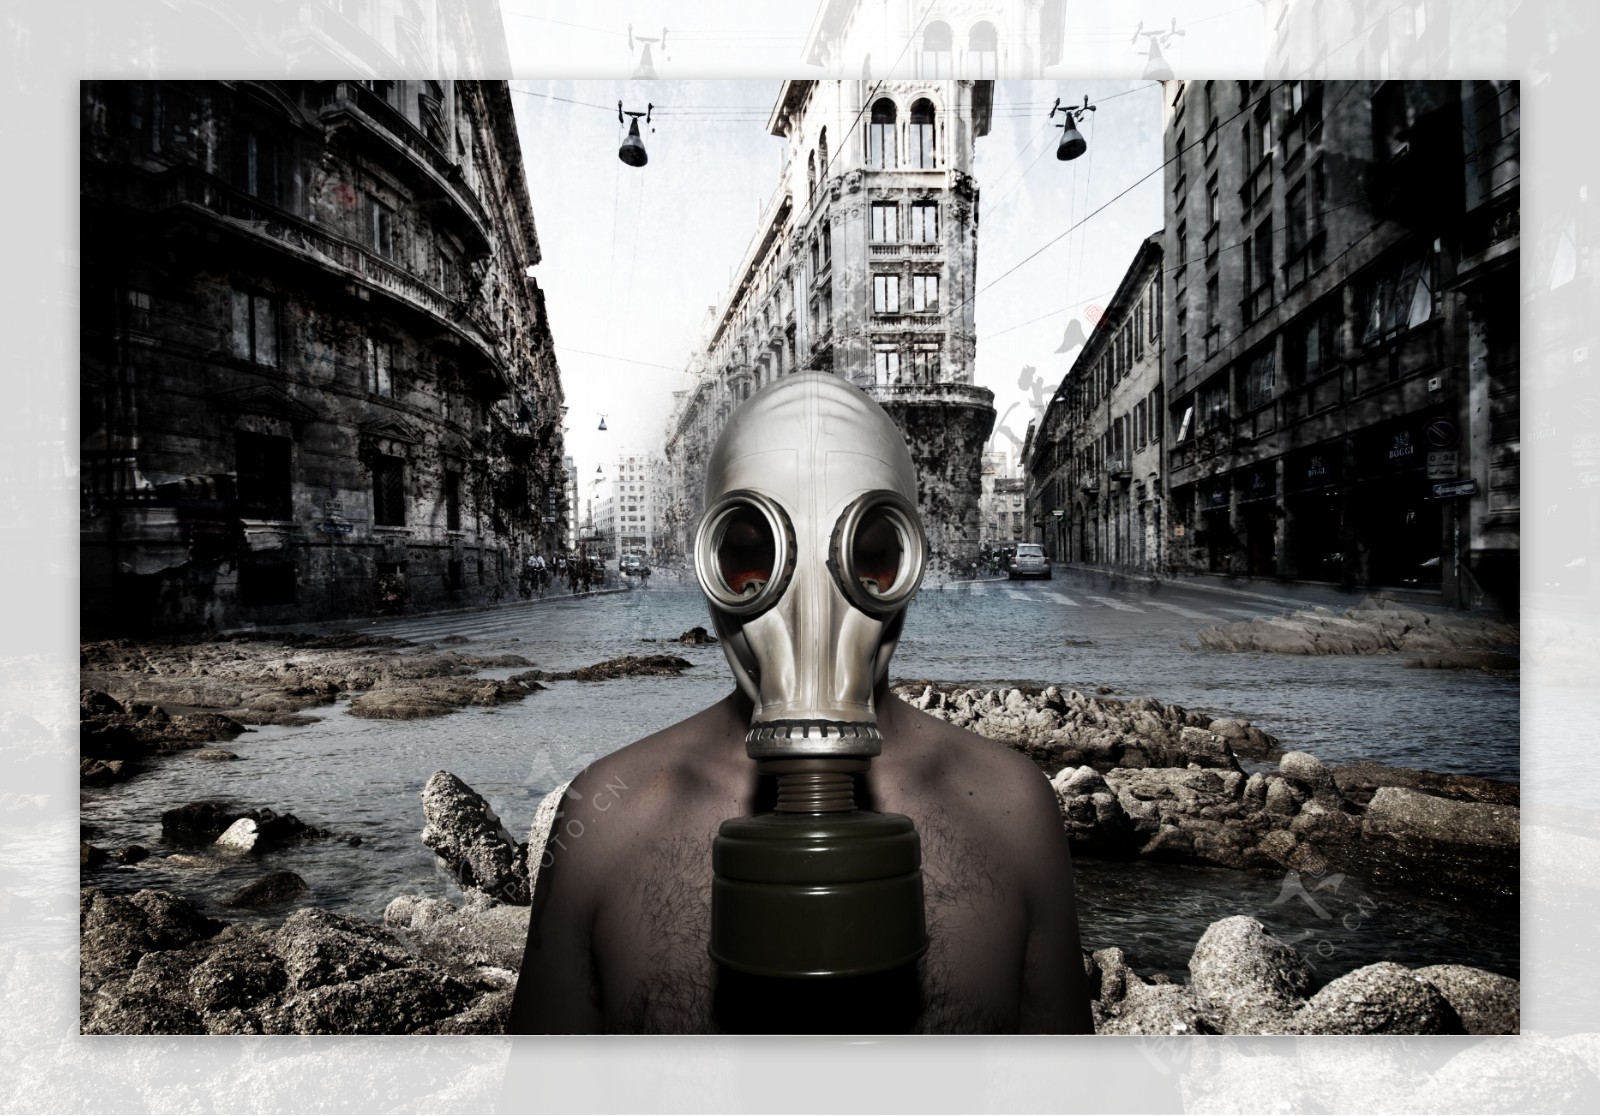 环境污染幻想海报设计图片